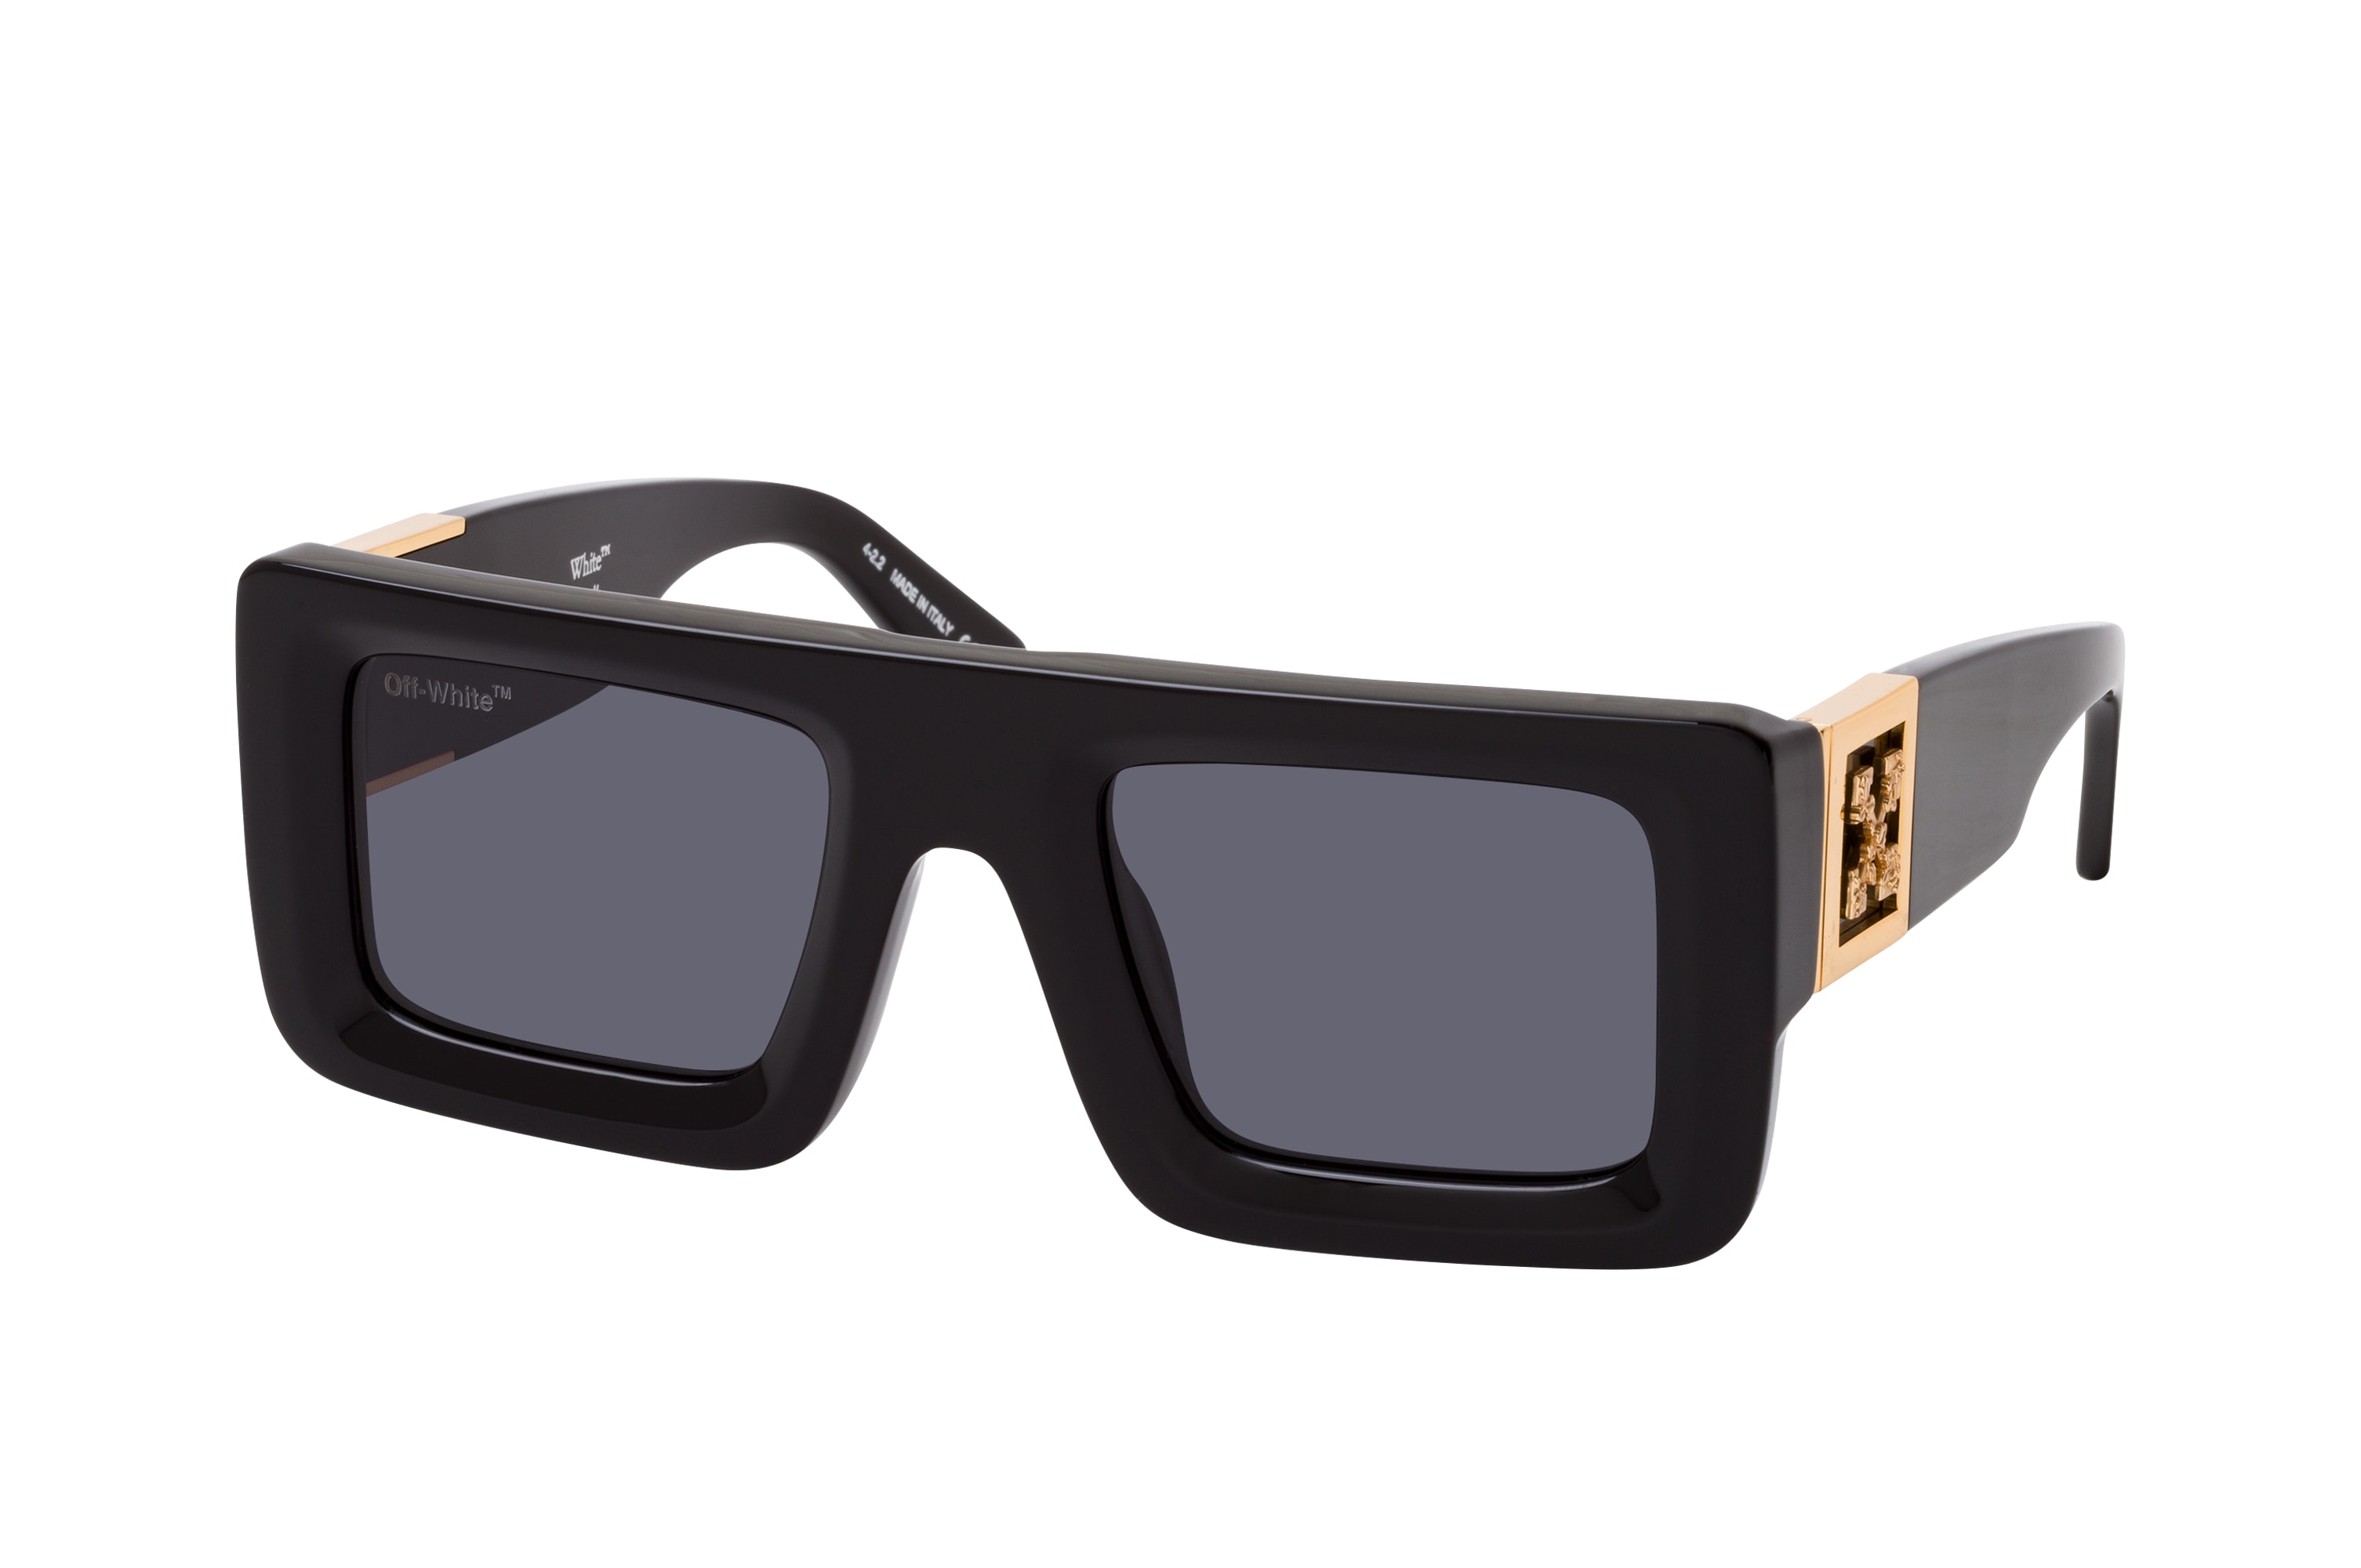 Leonardo square-frame sunglasses in grey